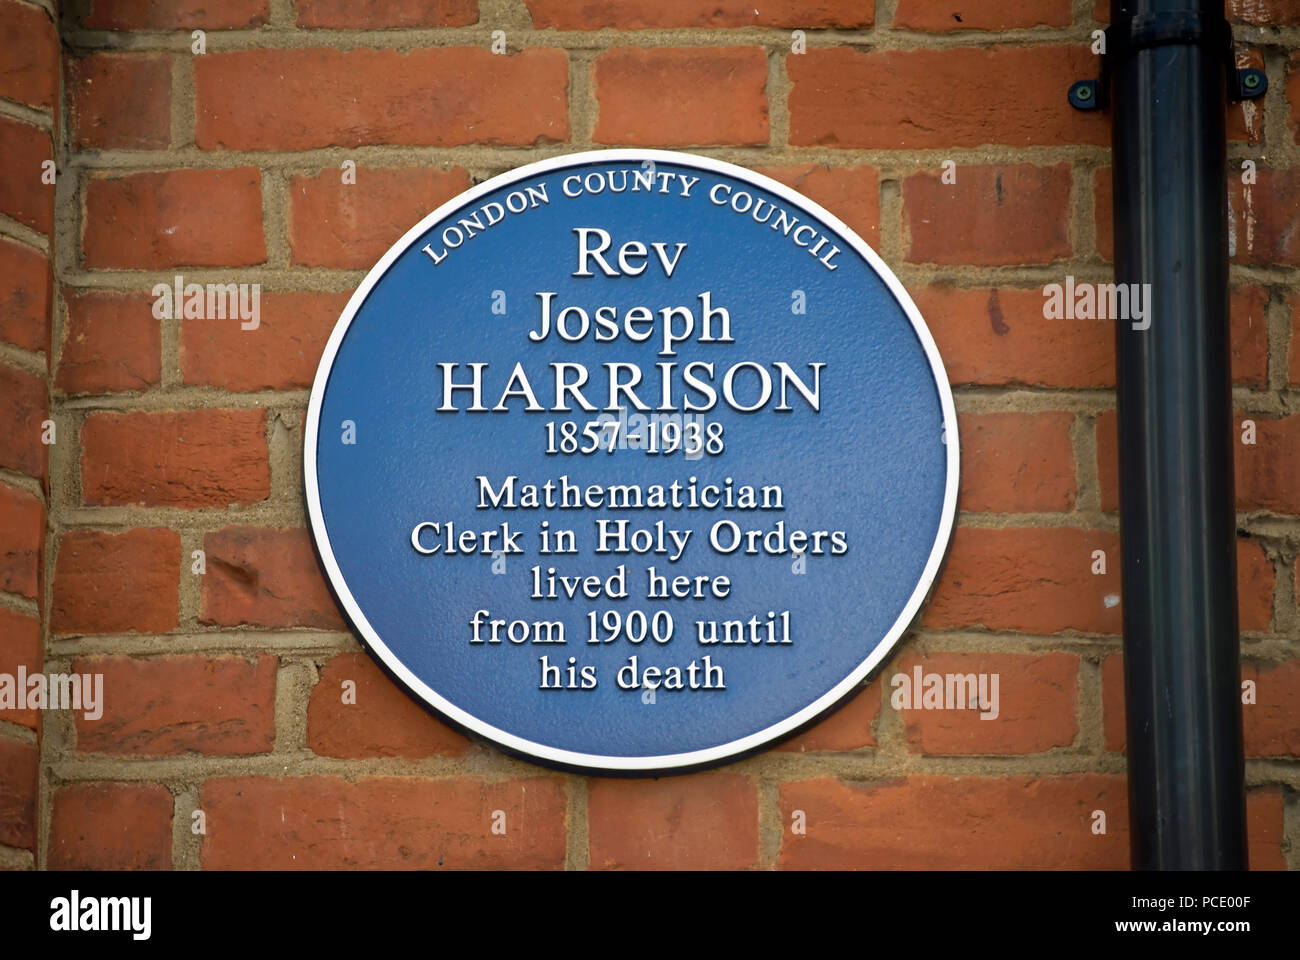 London County council targa blu la marcatura di una casa del Reverendo Joseph Harrison, matematico e commesso negli ordini sacri, in Ealing, Londra, Inghilterra Foto Stock